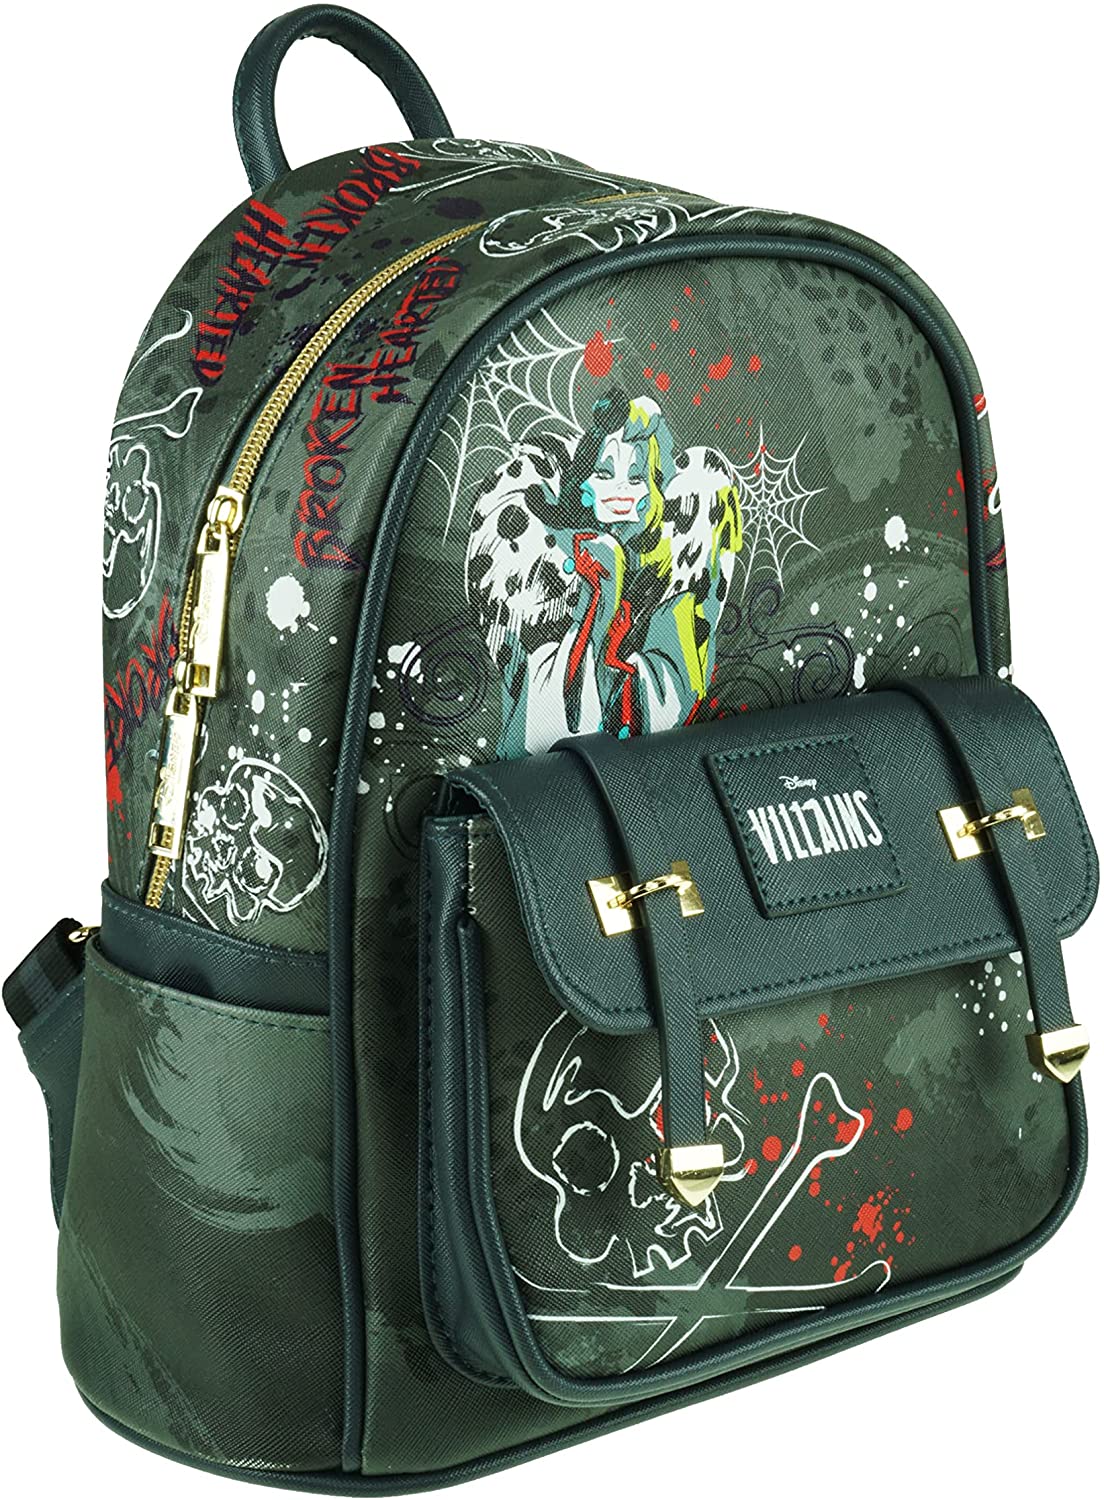 Villains - Cruella DeVil 11" Vegan Leather Mini Backpack - A21820 - GTE Zone